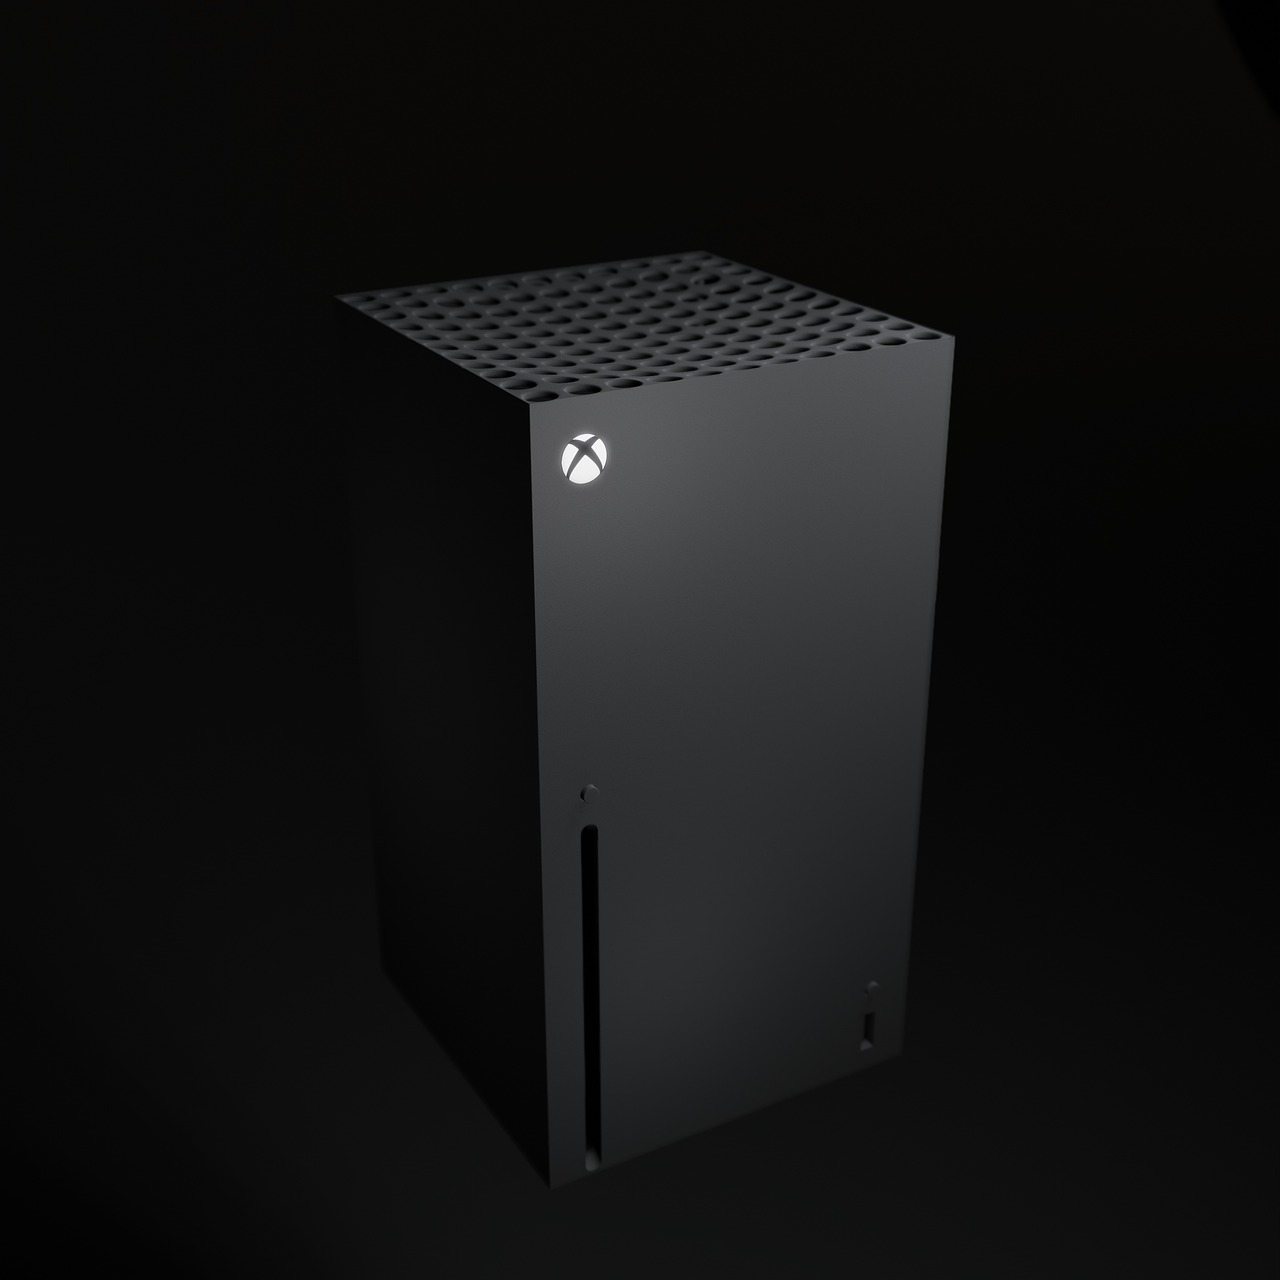  Votre Xbox Series X | S va désormais télécharger vos jeux plus rapidement